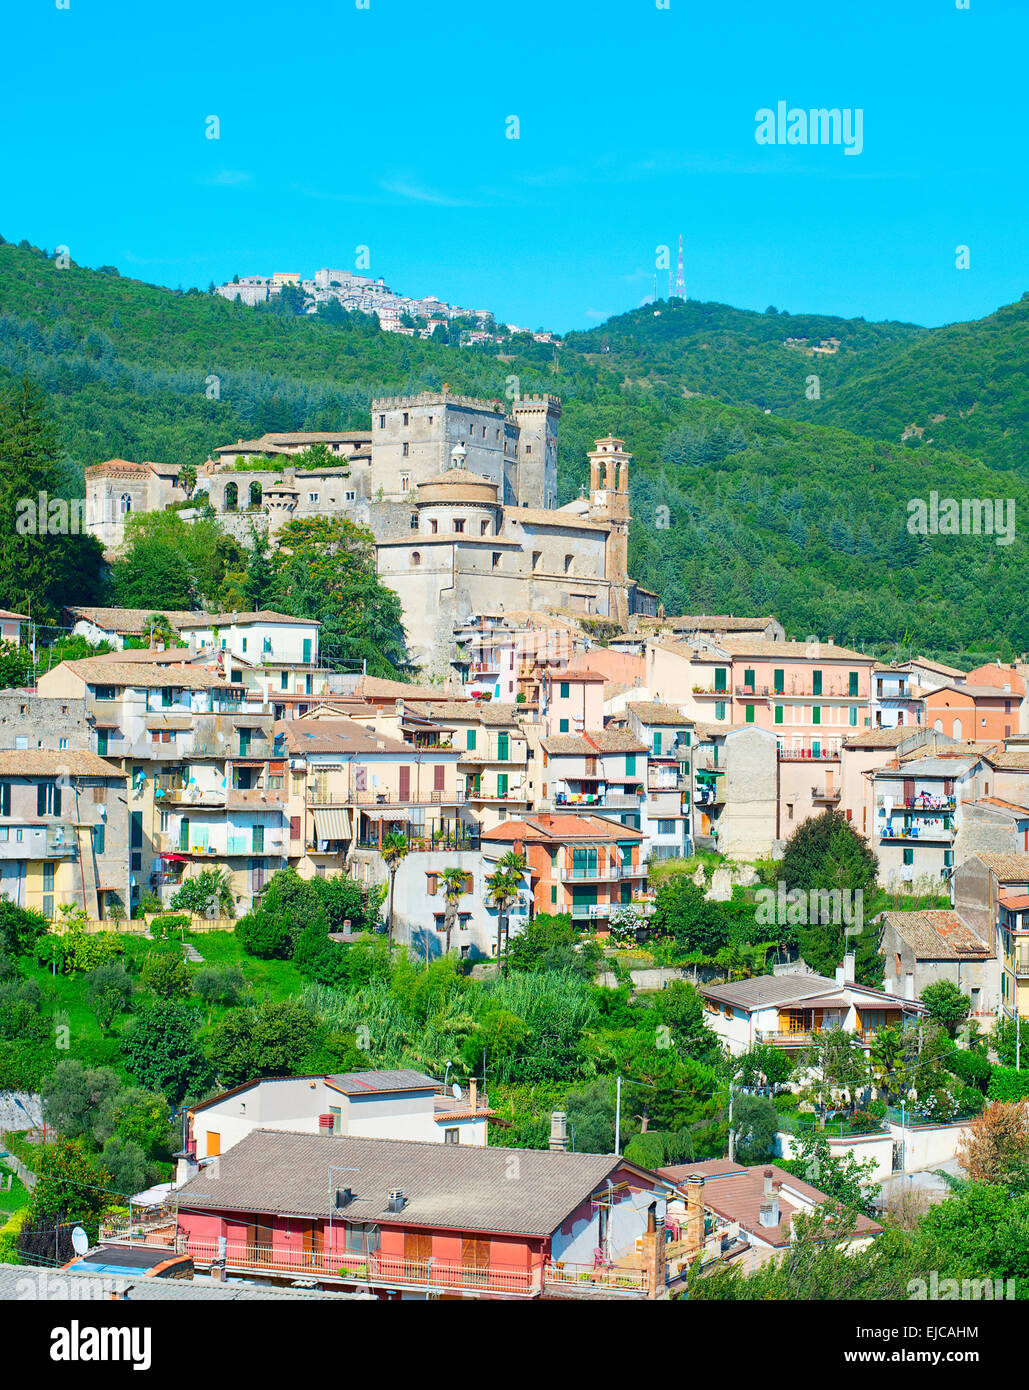 Italian mountains town Stock Photo - Alamy